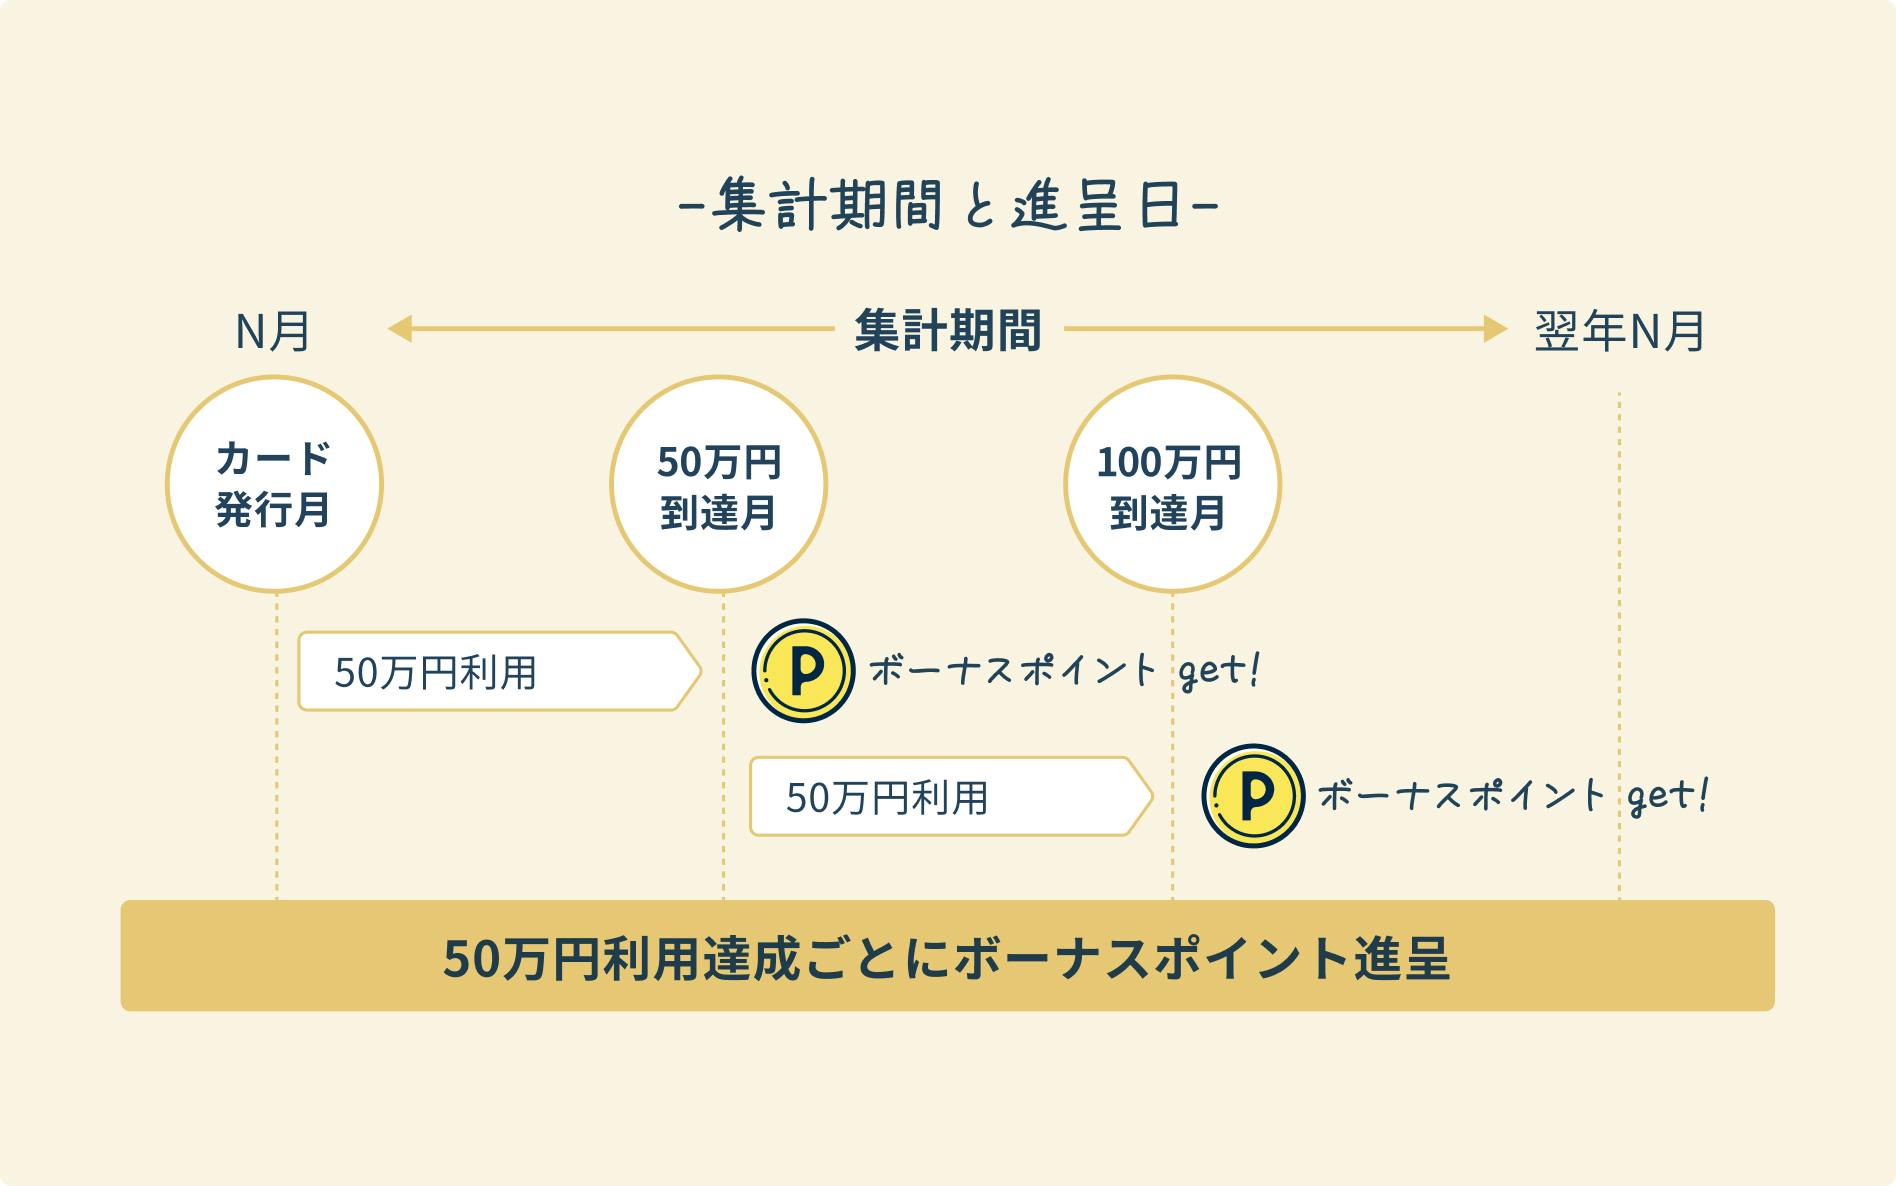 集計期間と進呈日。カード発行月から50万円利用達成ごとにボーナスポイント進呈